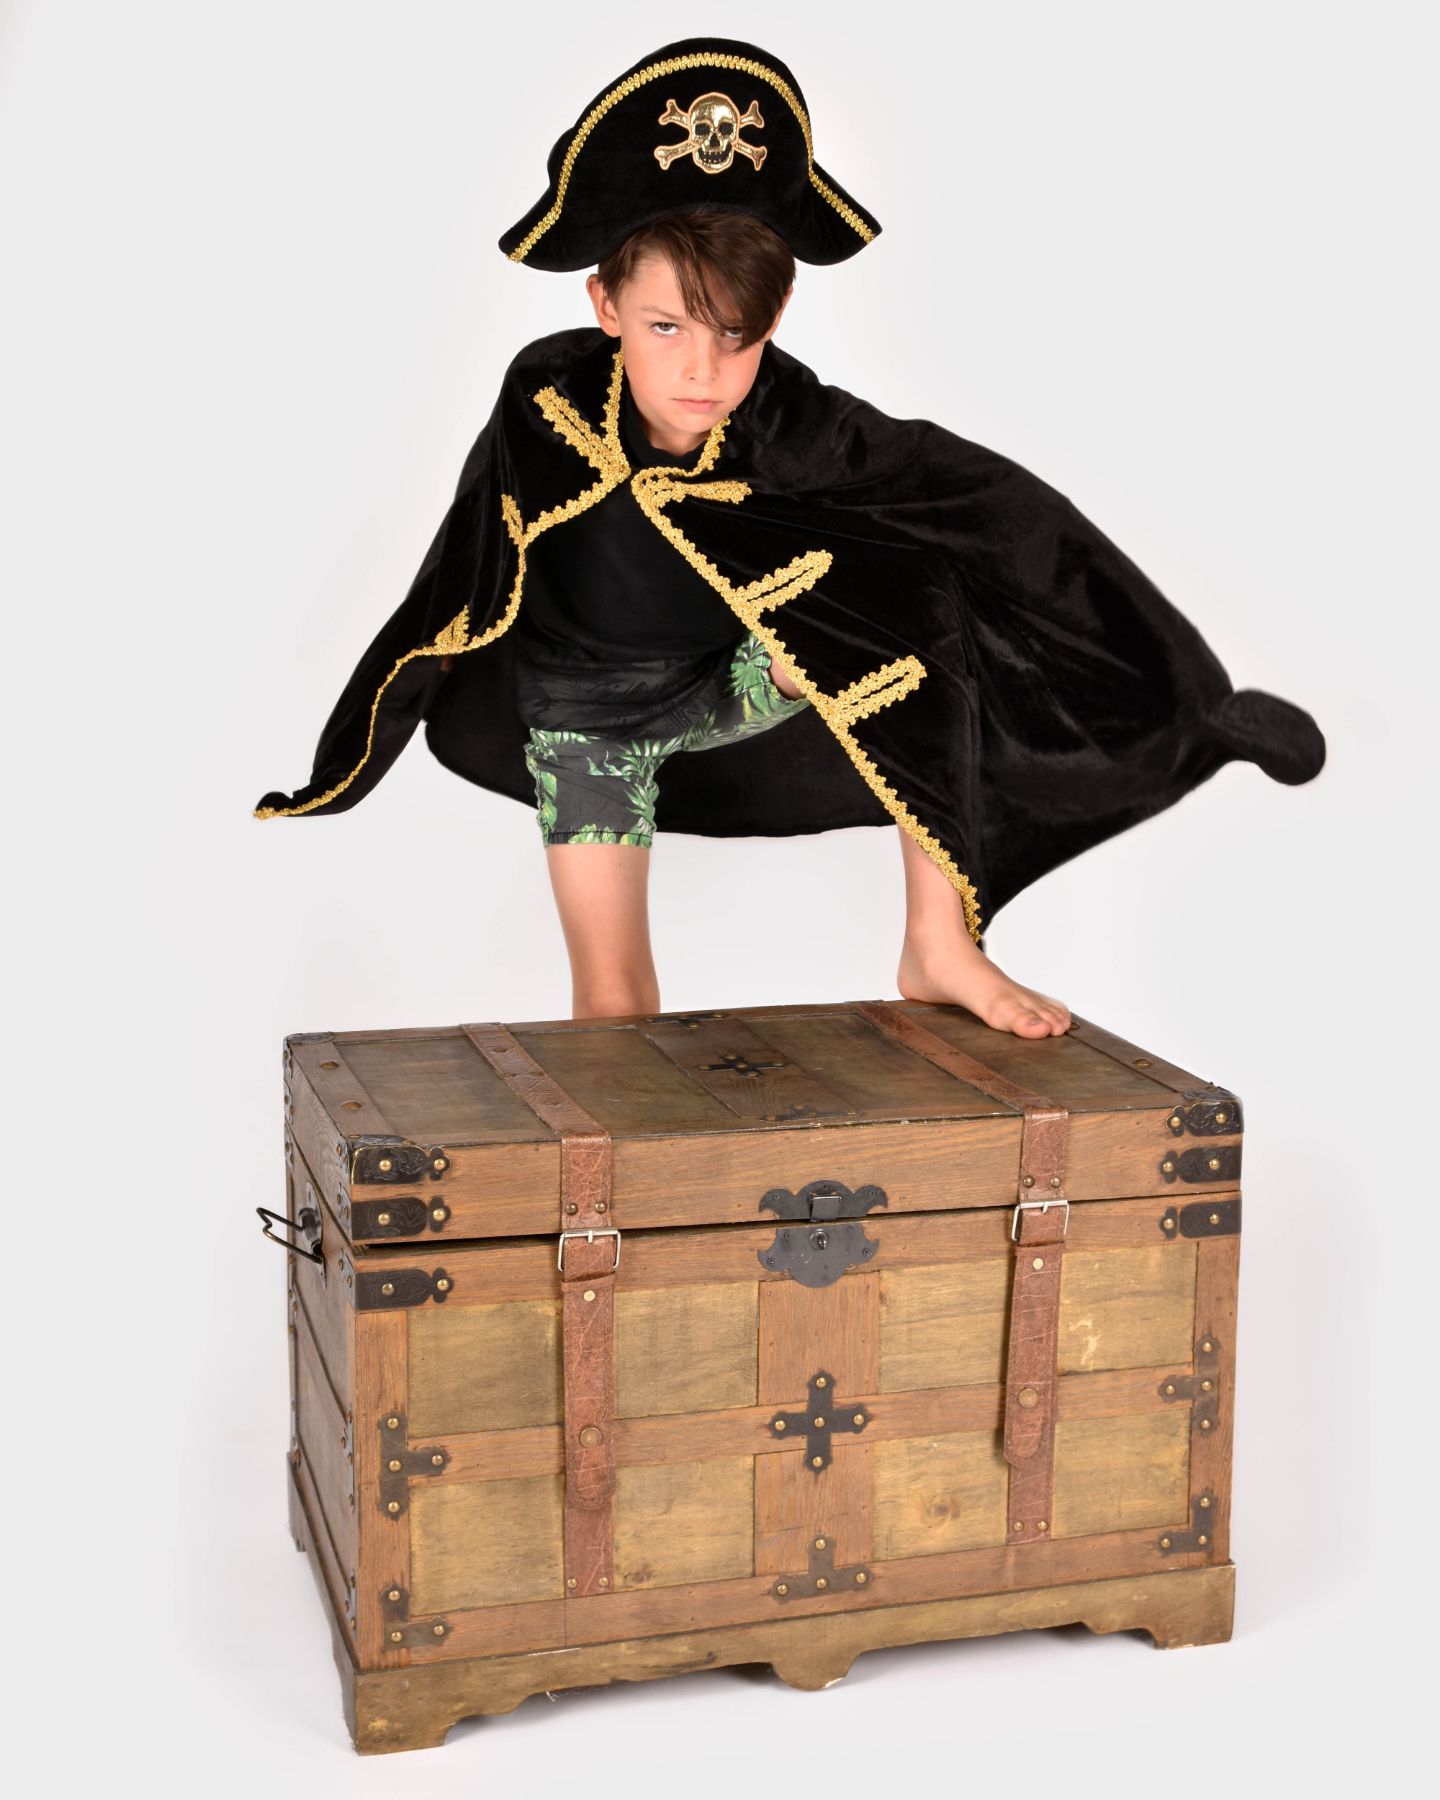 Pojke iklädd en piratcape och pirathatt, båda med gulddetaljer. Pojken står lutad mot en skattkista.